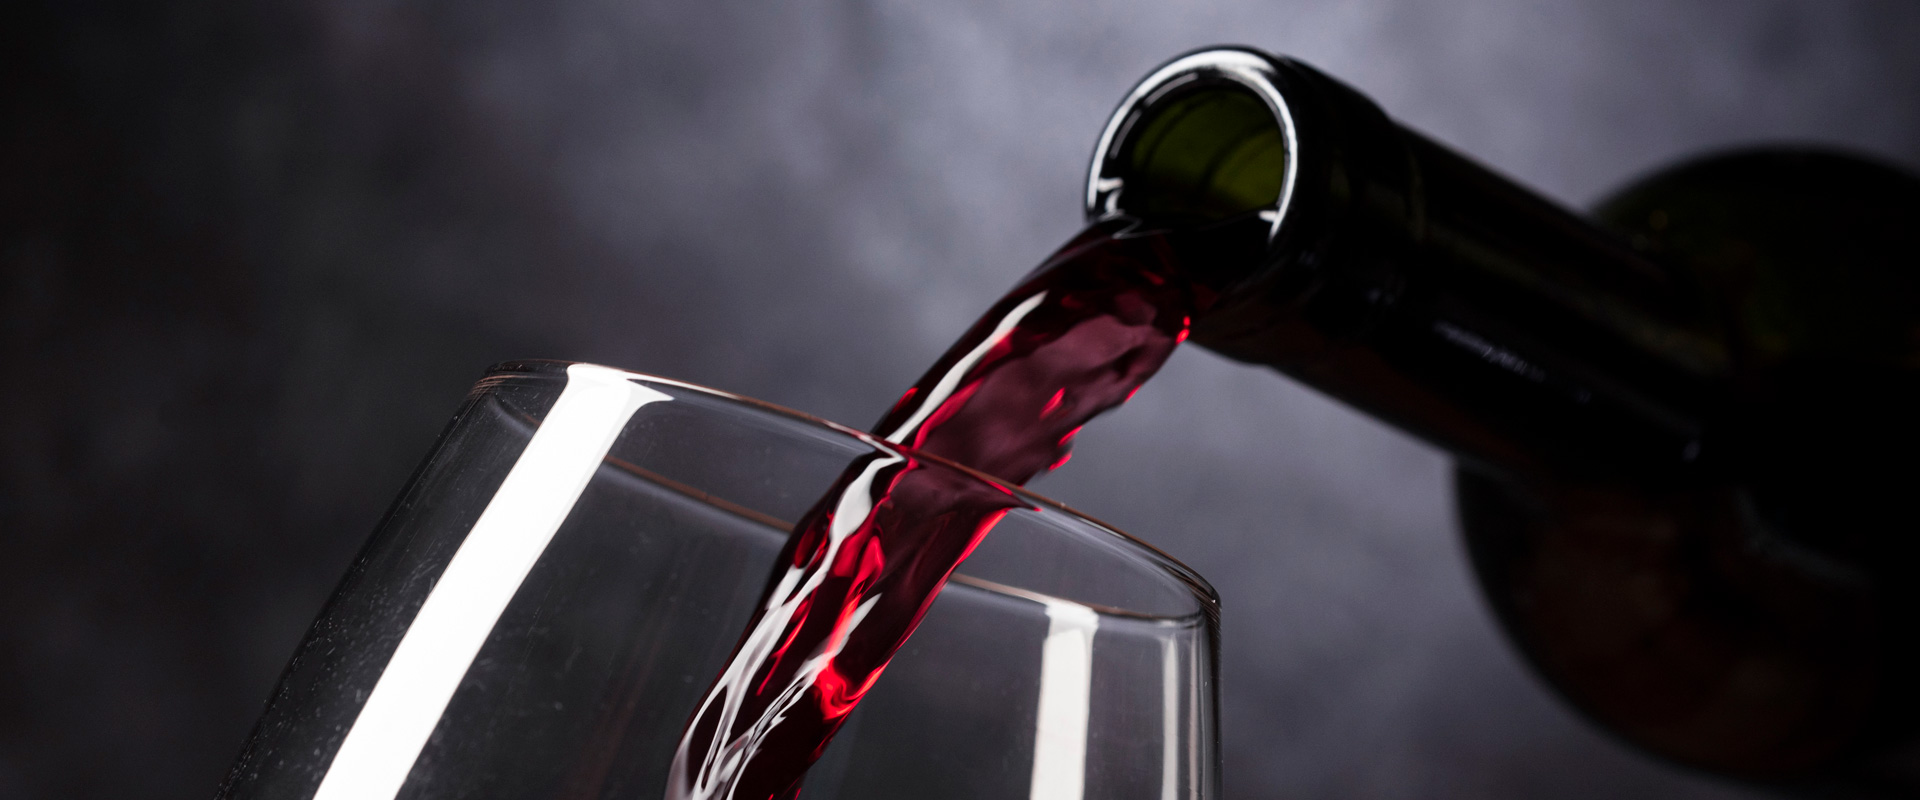 Le vin rouge est versé dans un verre